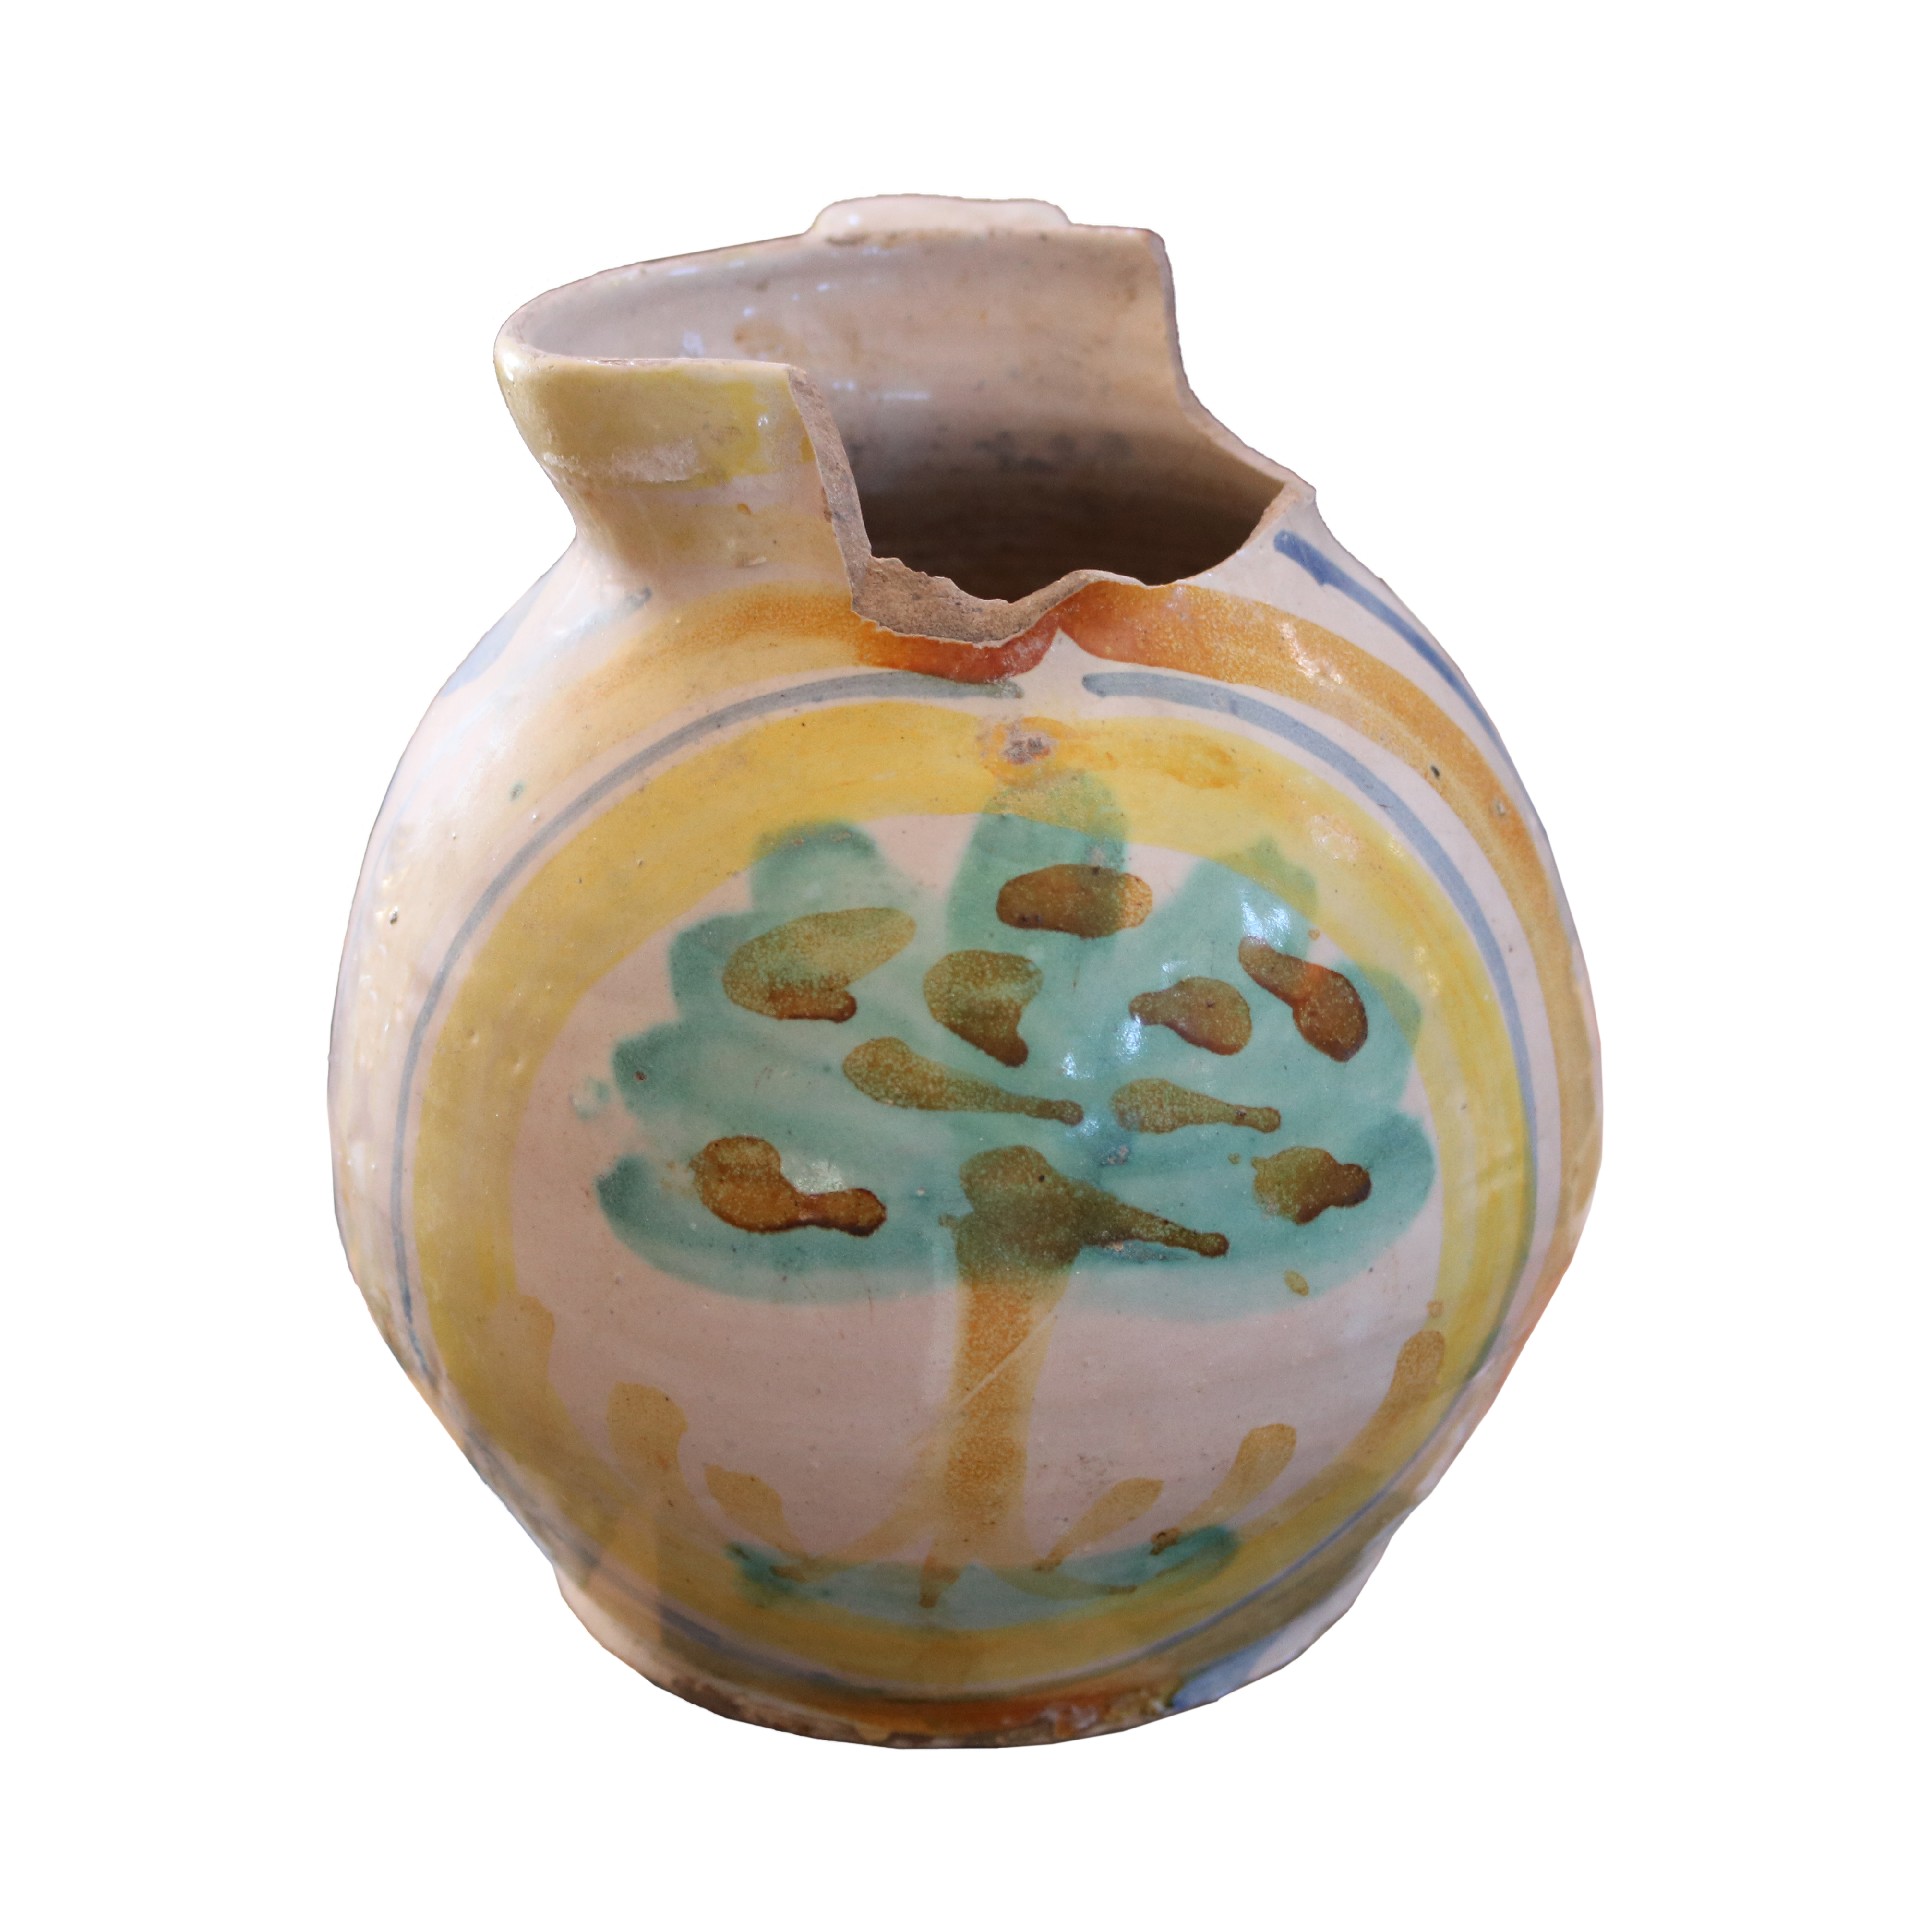 Antica brocca in maiolica. - Ceramiche - Oggettistica - Prodotti - Antichità Fiorillo